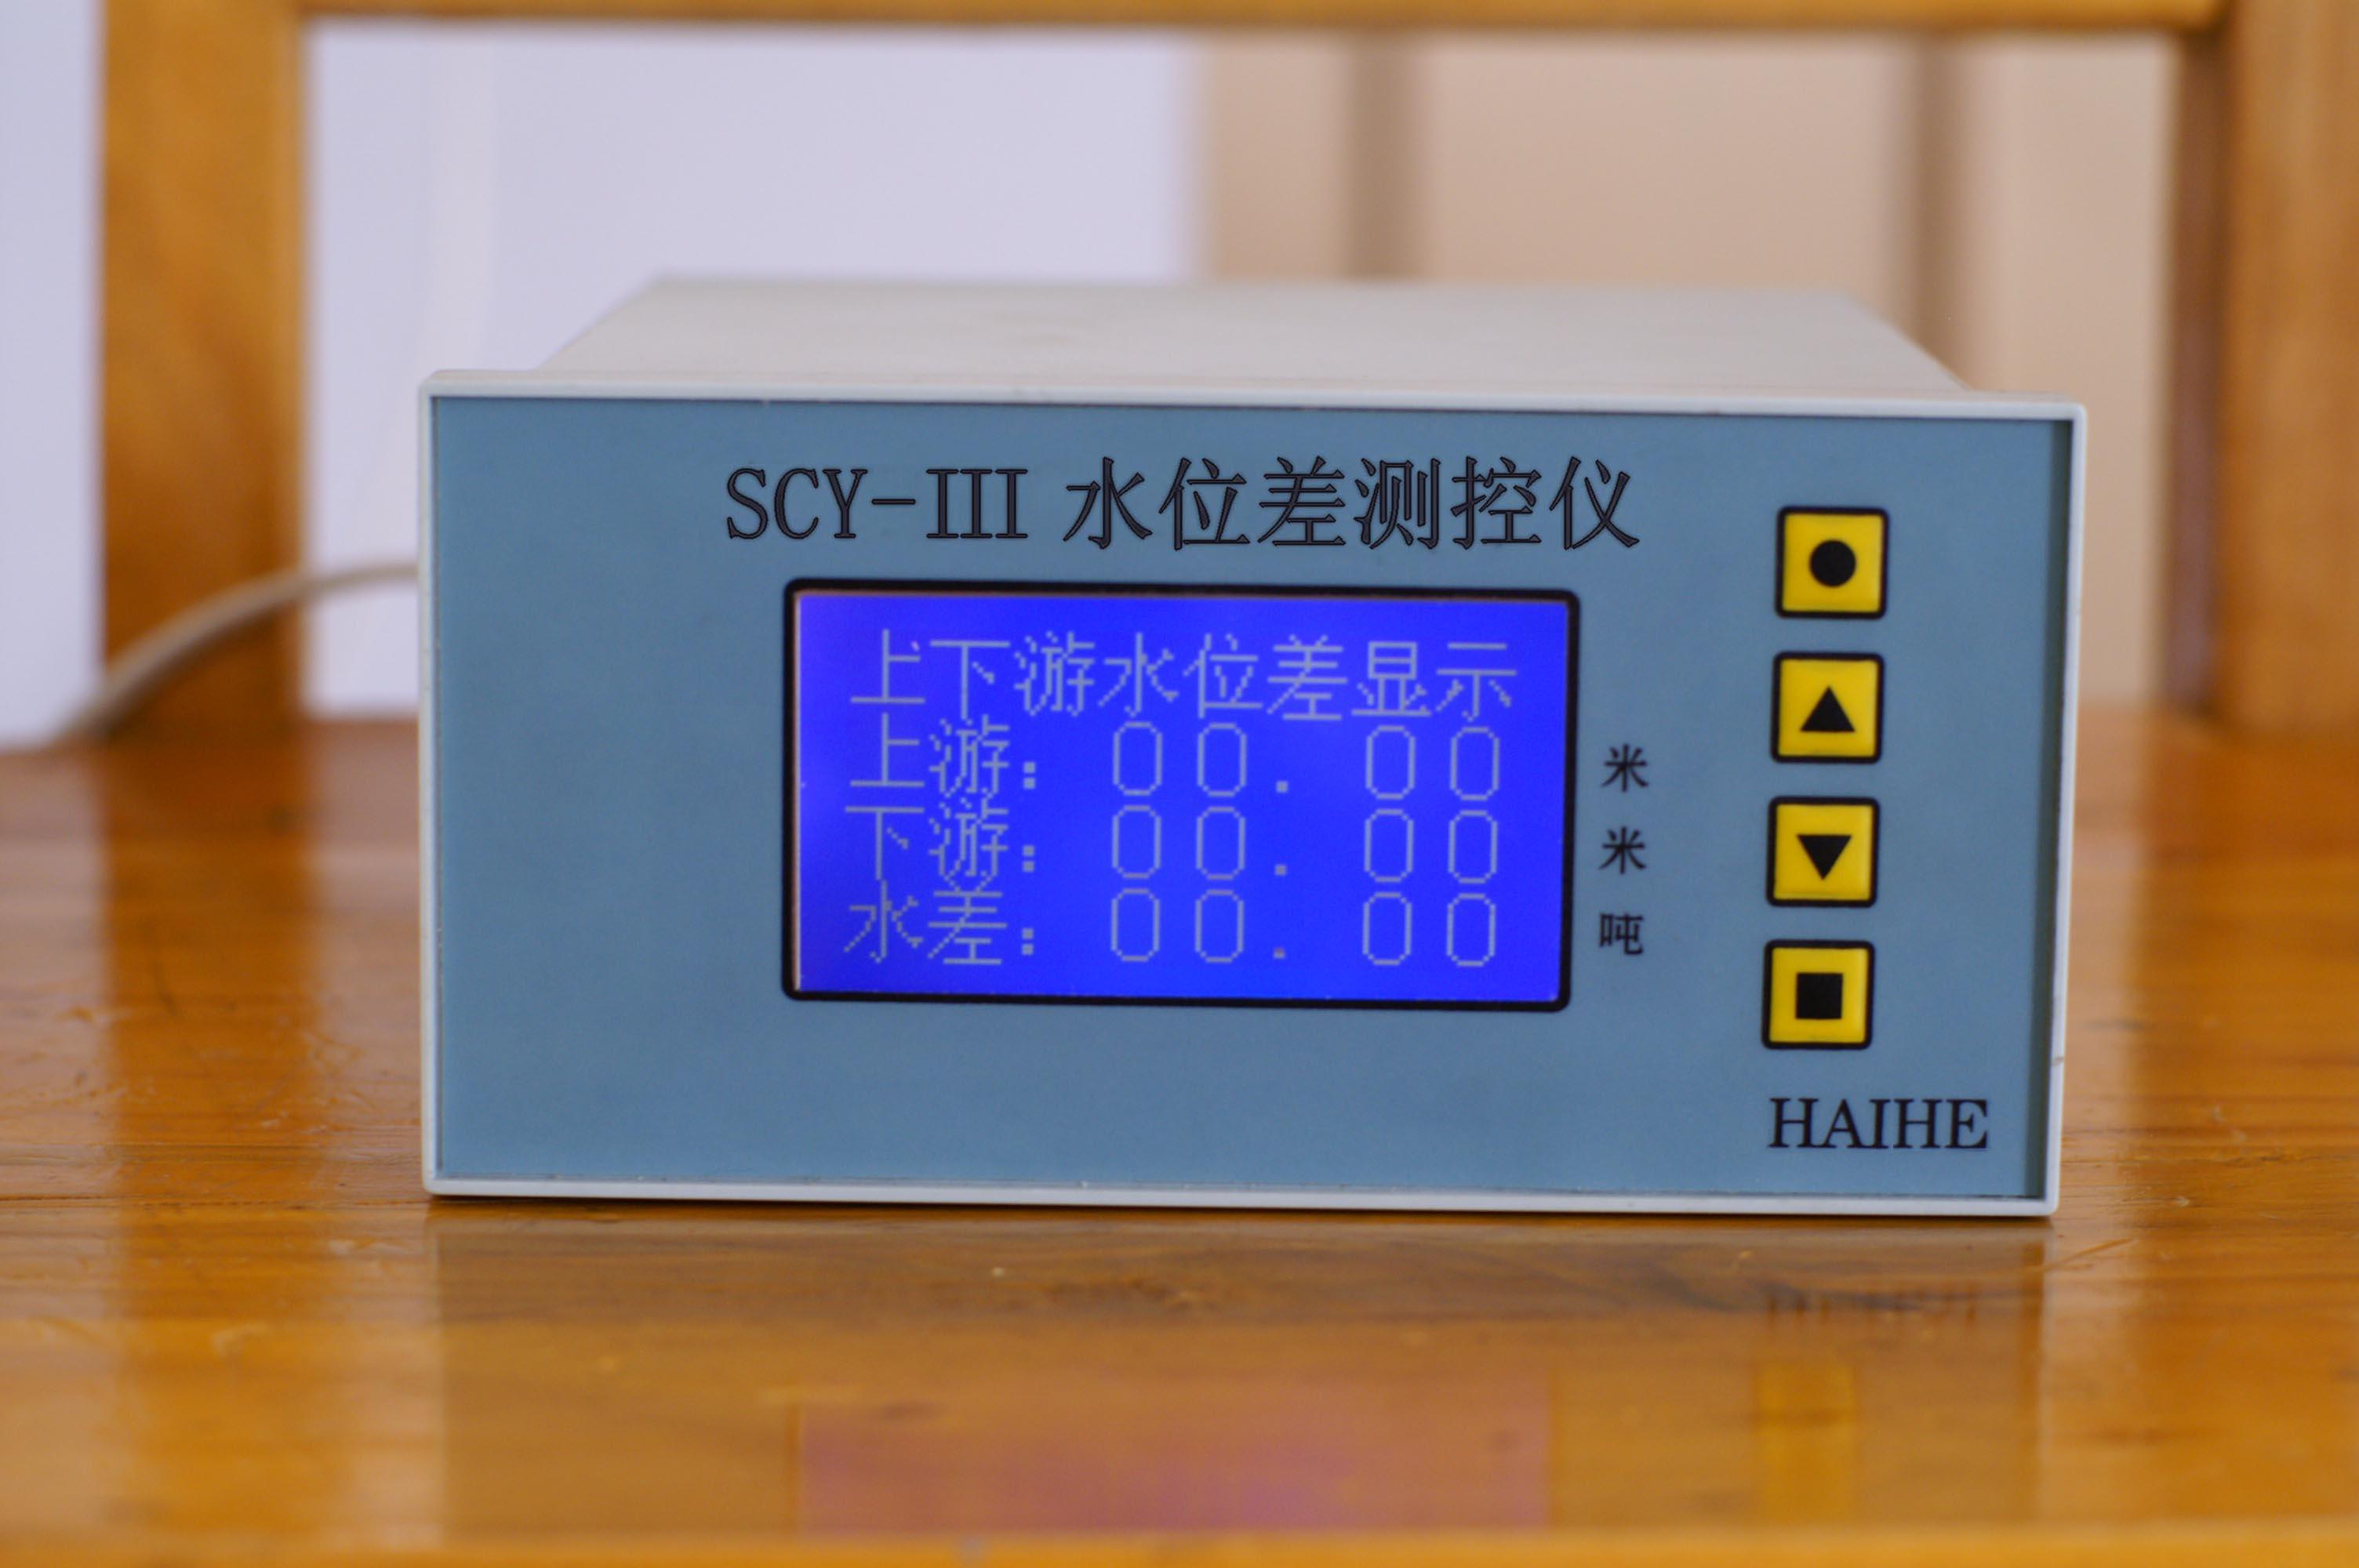 海河SCY-III水位差仪，液晶中文显示屏